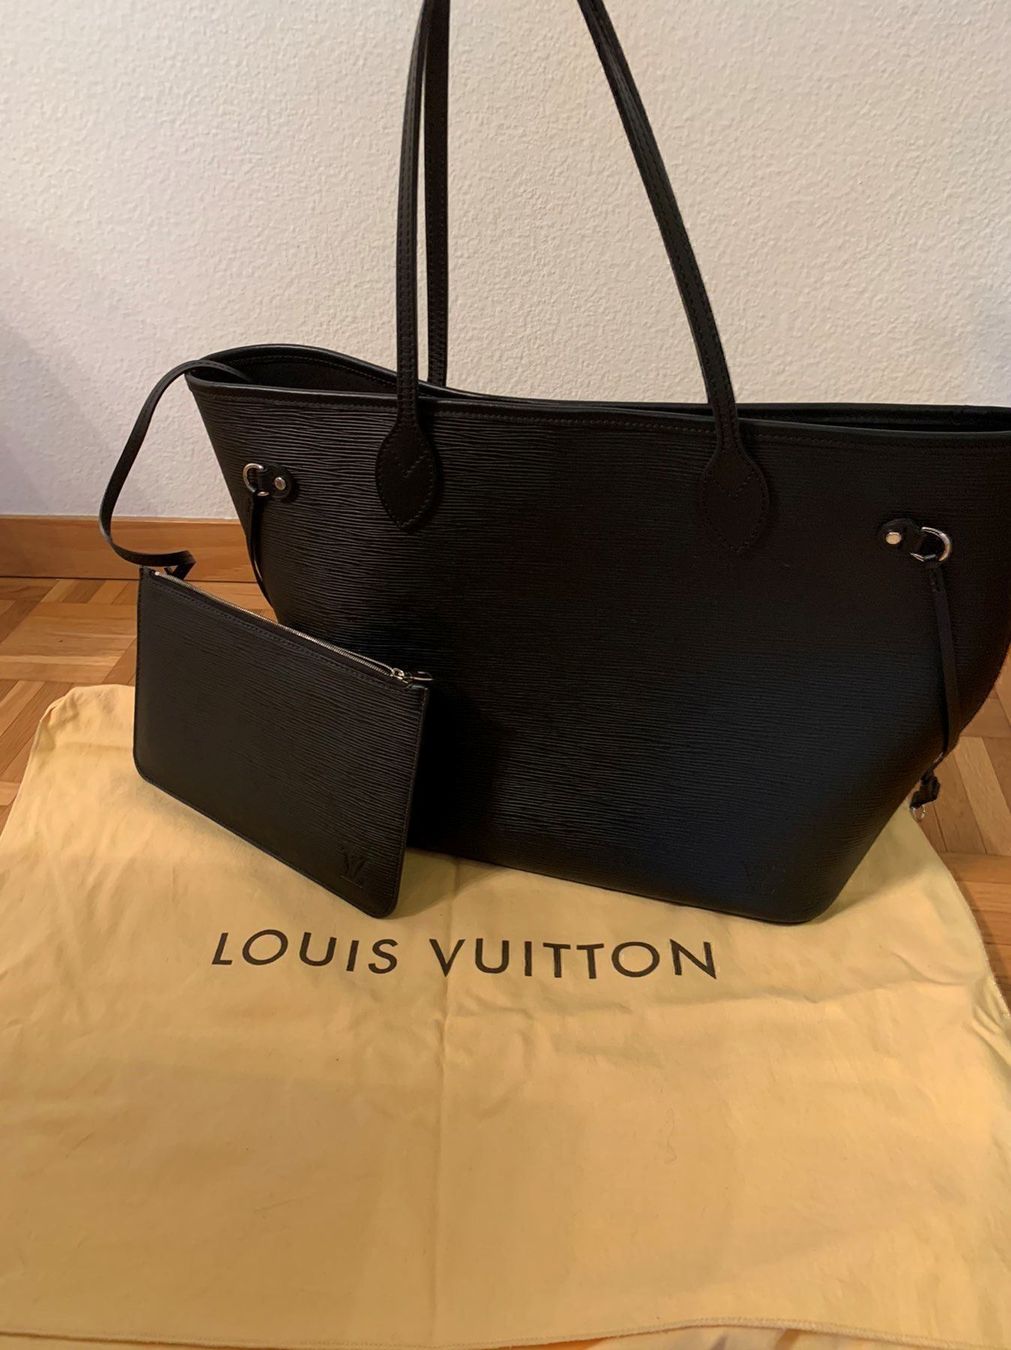 Louis Vuitton Neverfull Epi Noir kaufen auf Ricardo